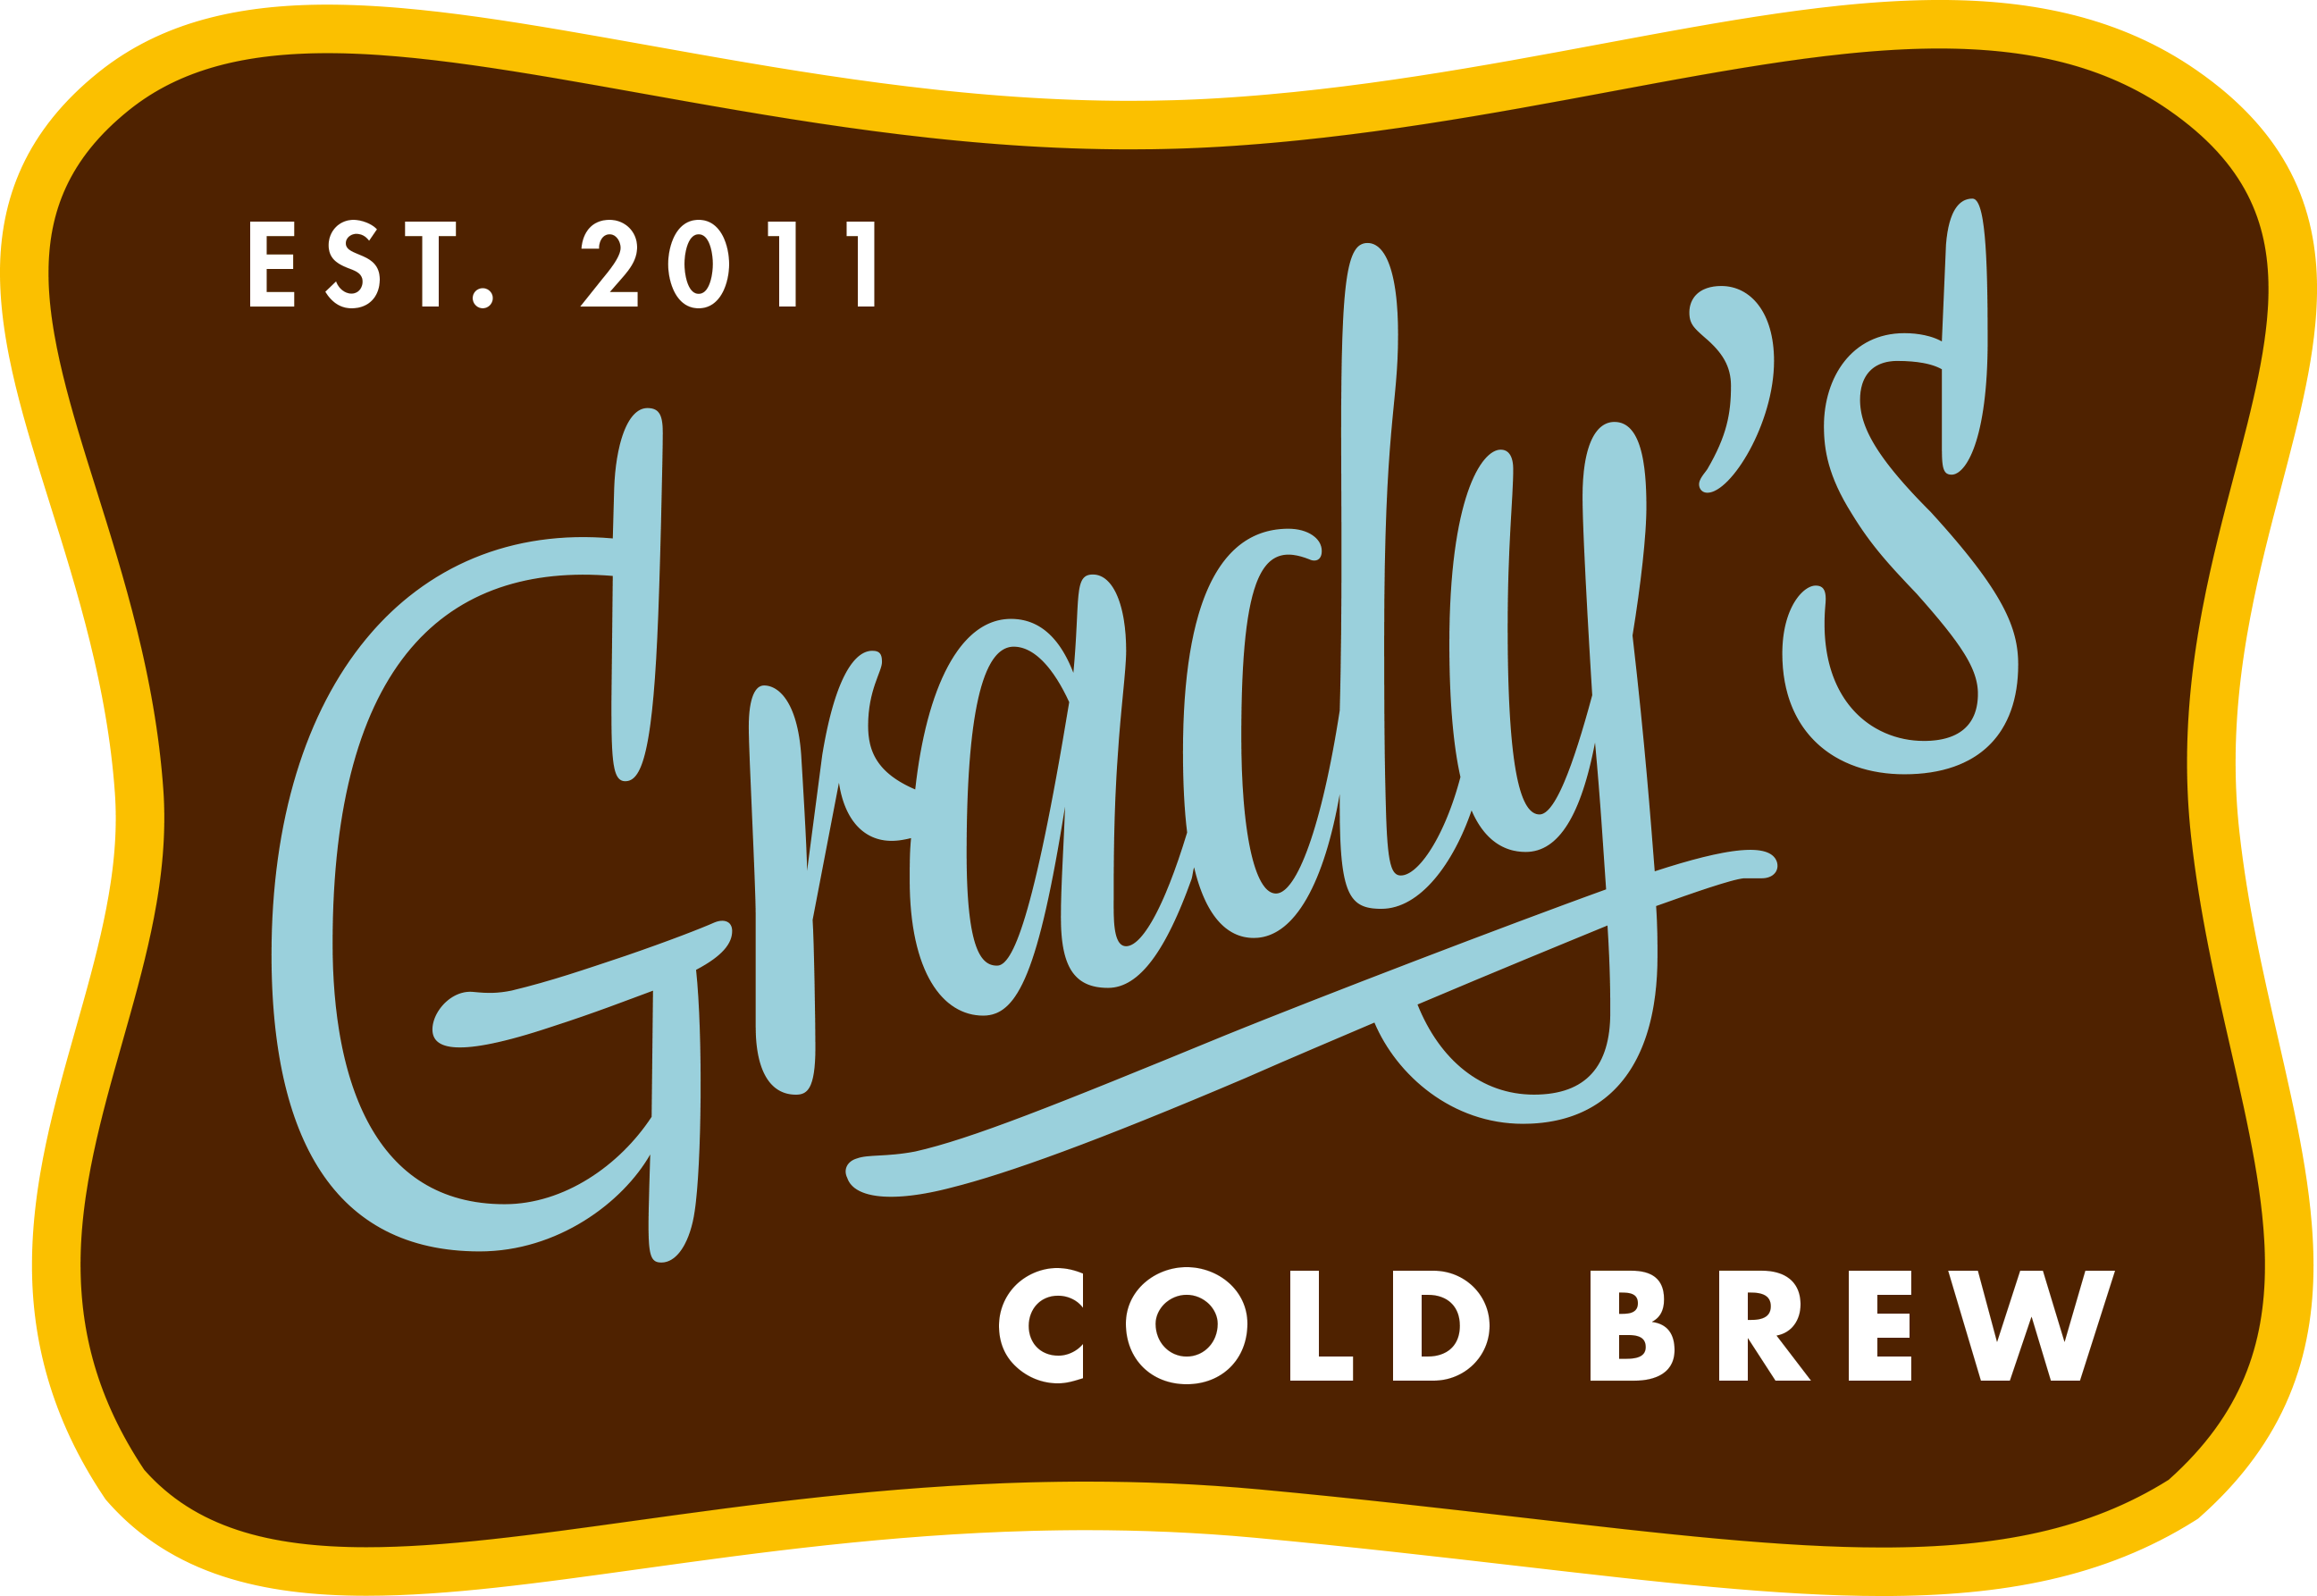 Grady's Cold Brew